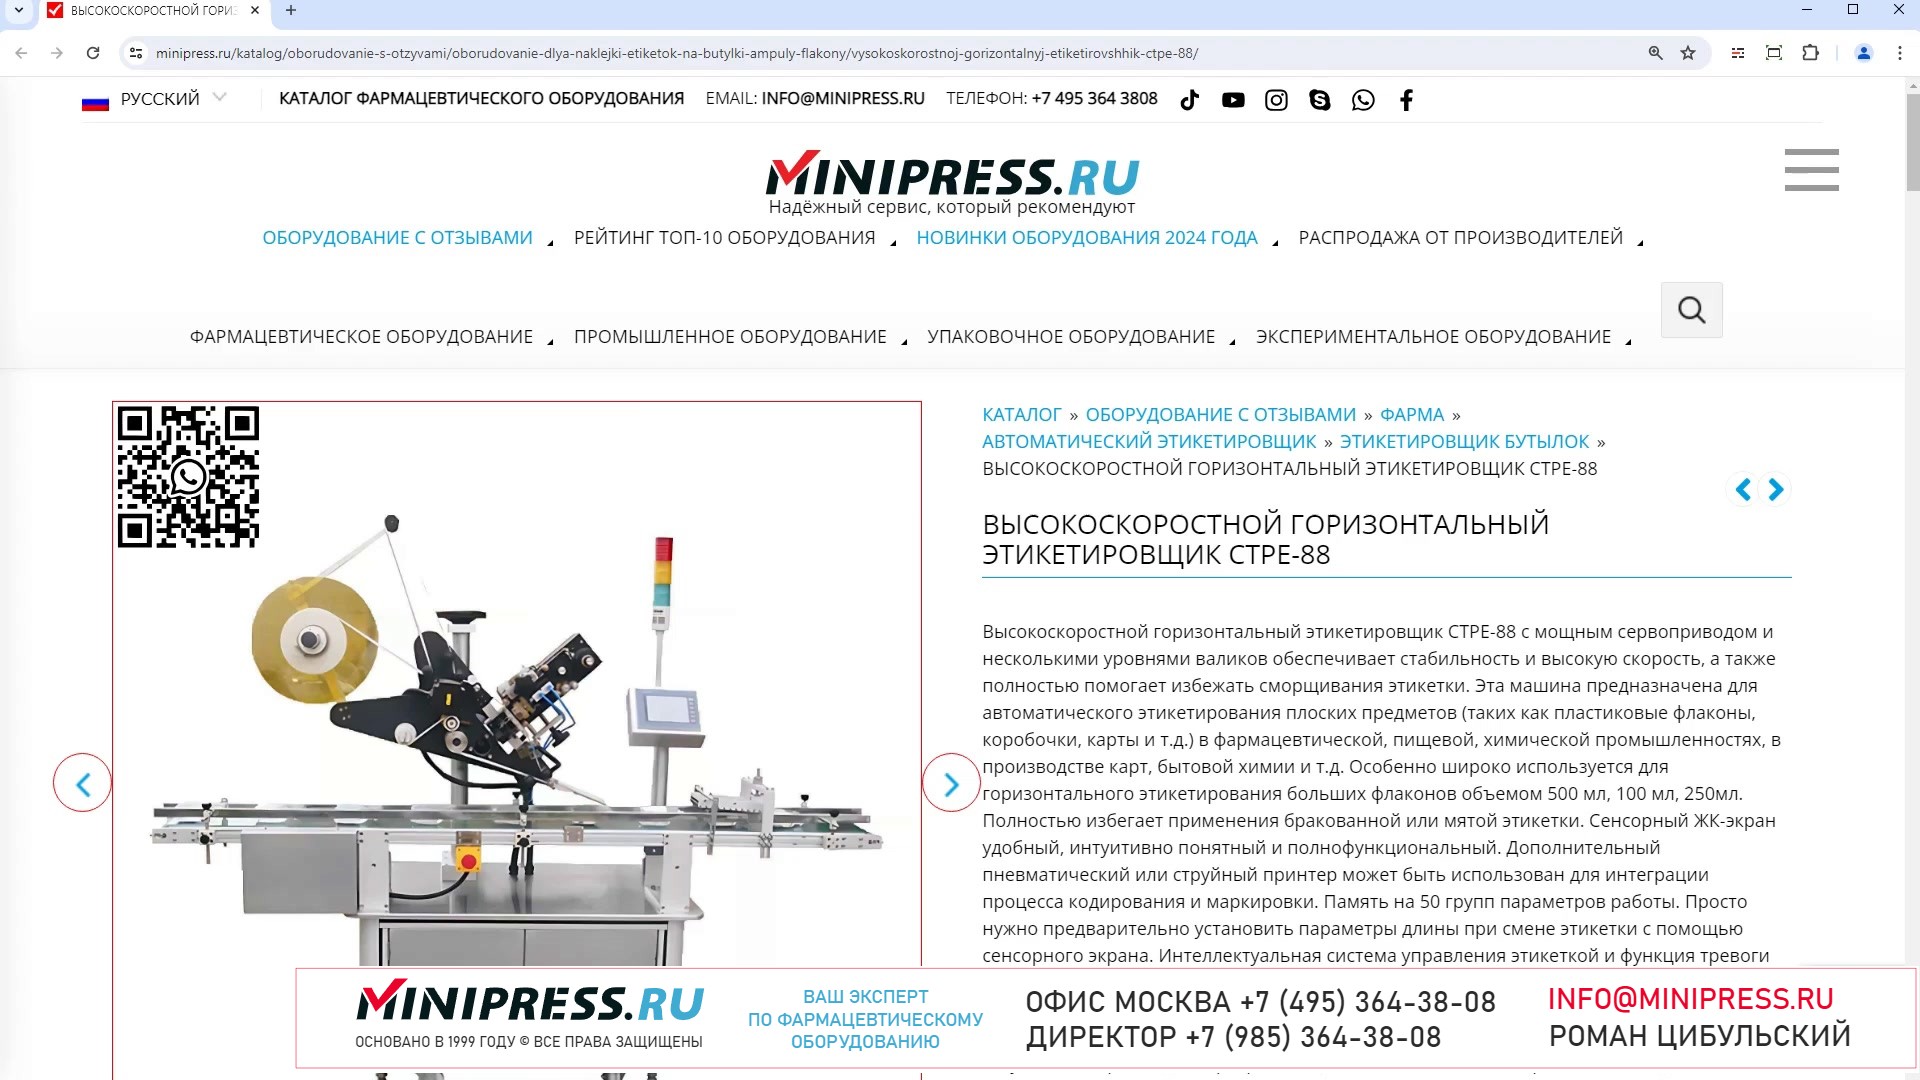 Minipress.ru Высокоскоростной горизонтальный этикетировщик CTPE-88